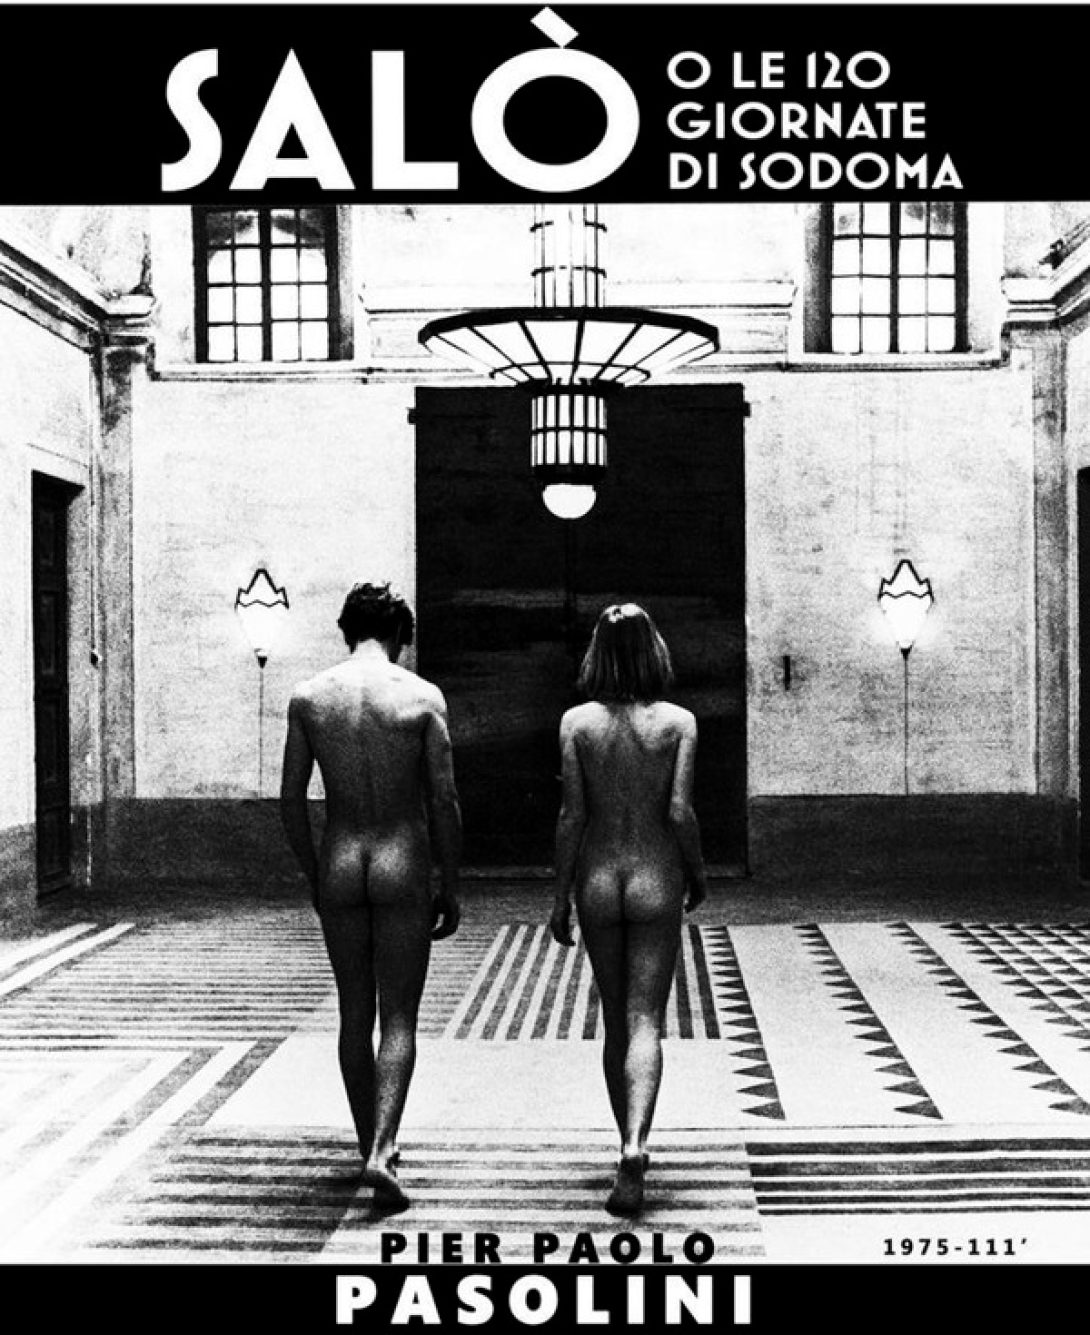 Portada de la peĺícula "Saló, o los 120 días de Sodoma", de Pier Paolo Pasolini.